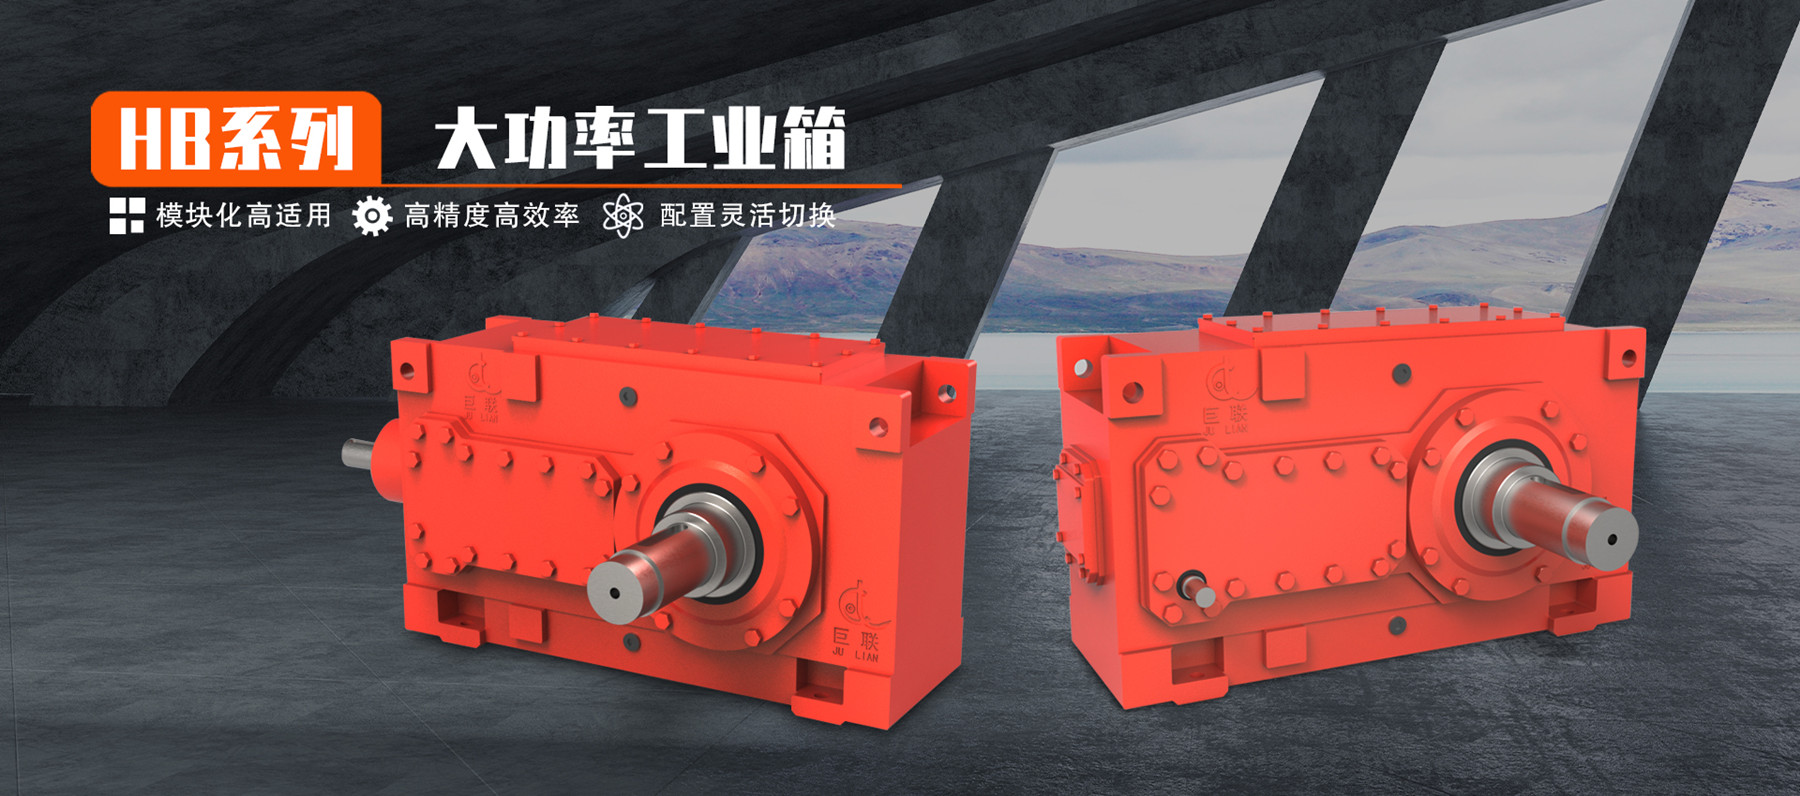 HB系列大功率工業齒輪箱 模塊化高適用 高精度高效率 配置靈活切換